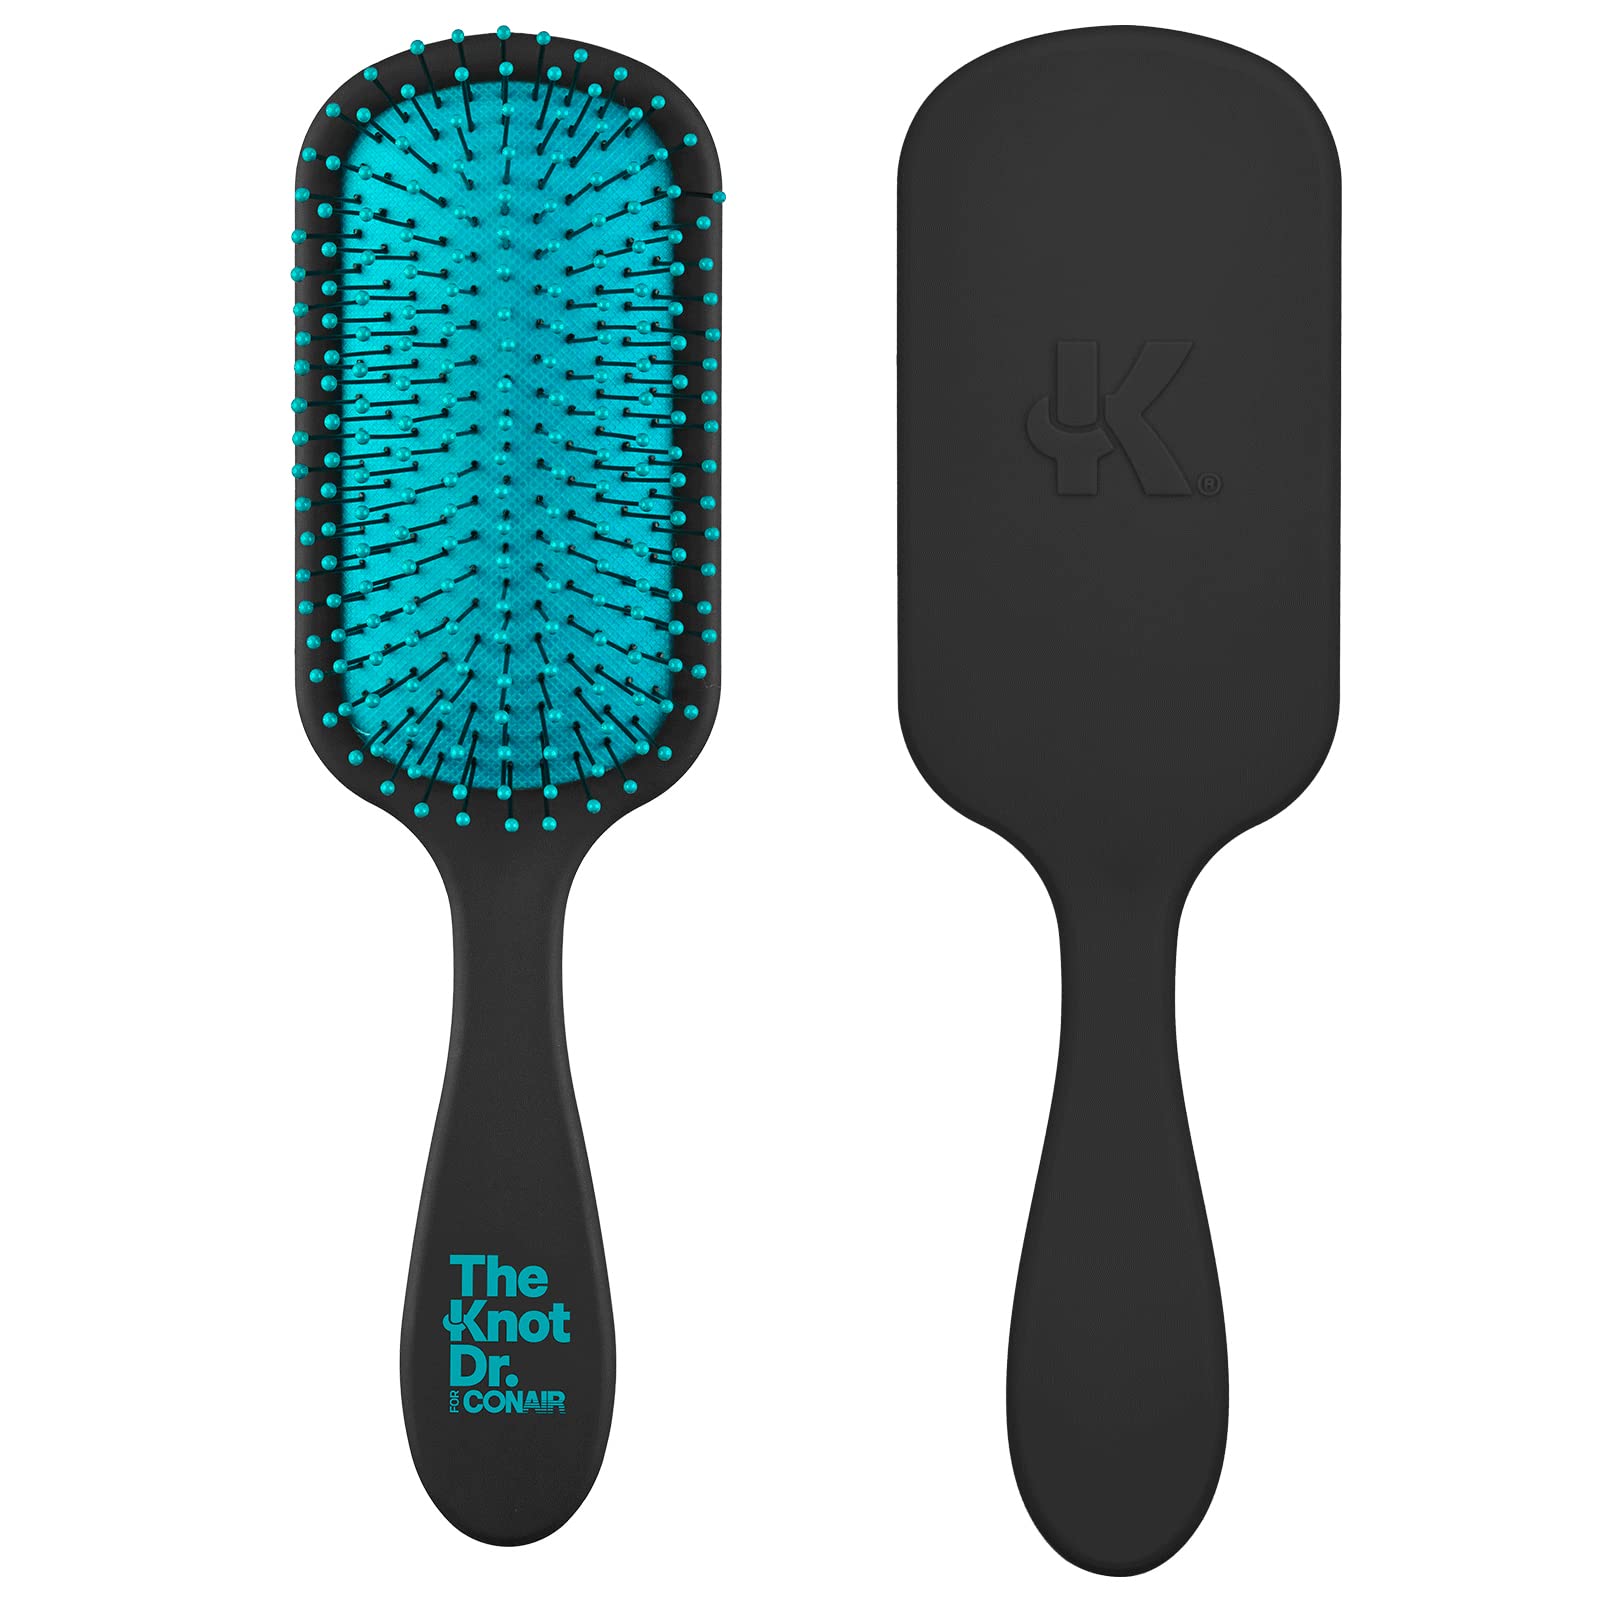 Dry & Wet Brush - Detangles Hair, Mini/White